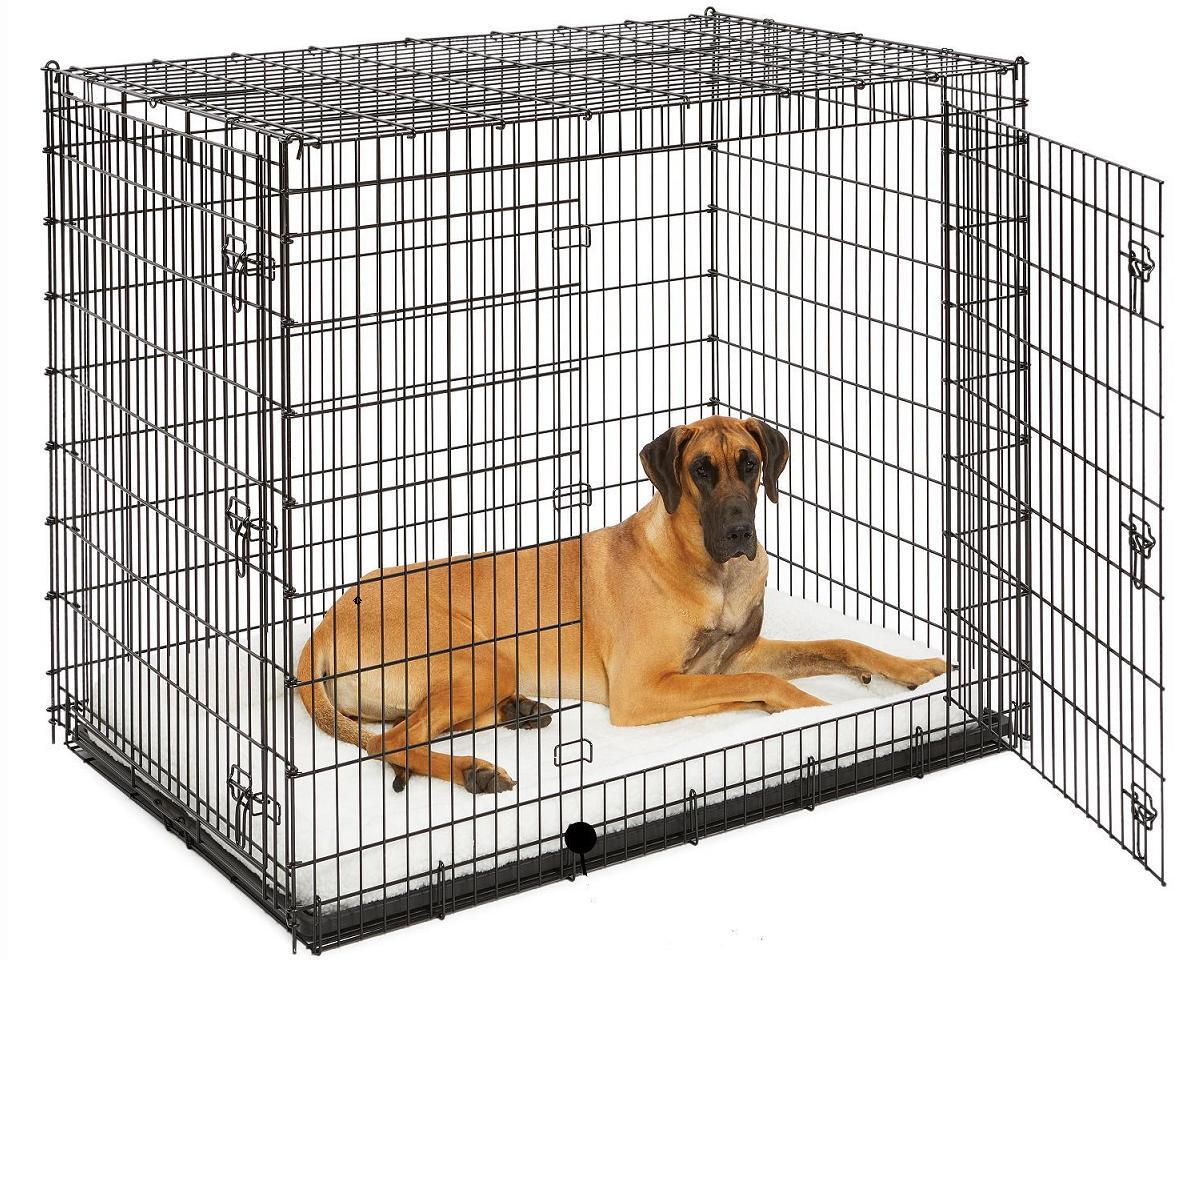 Hondenbench Mega - 137x94x114 cm - inclusief bijpassend wit benchkussen ** tijdelijk niet leverbaar